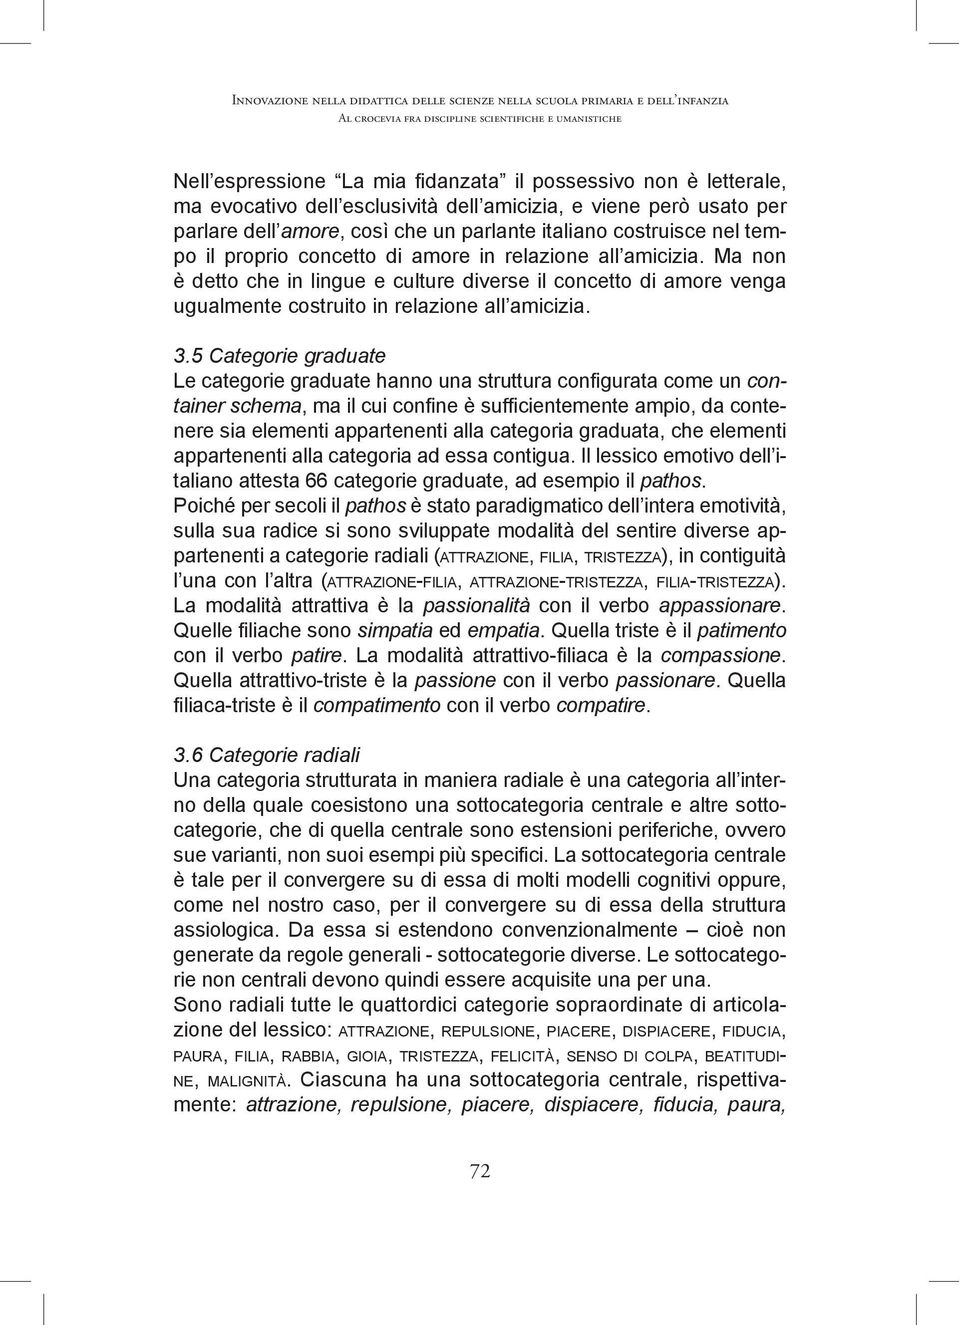 Il lessico emotivo dell italiano attesta 66 categorie graduate, ad esempio il.